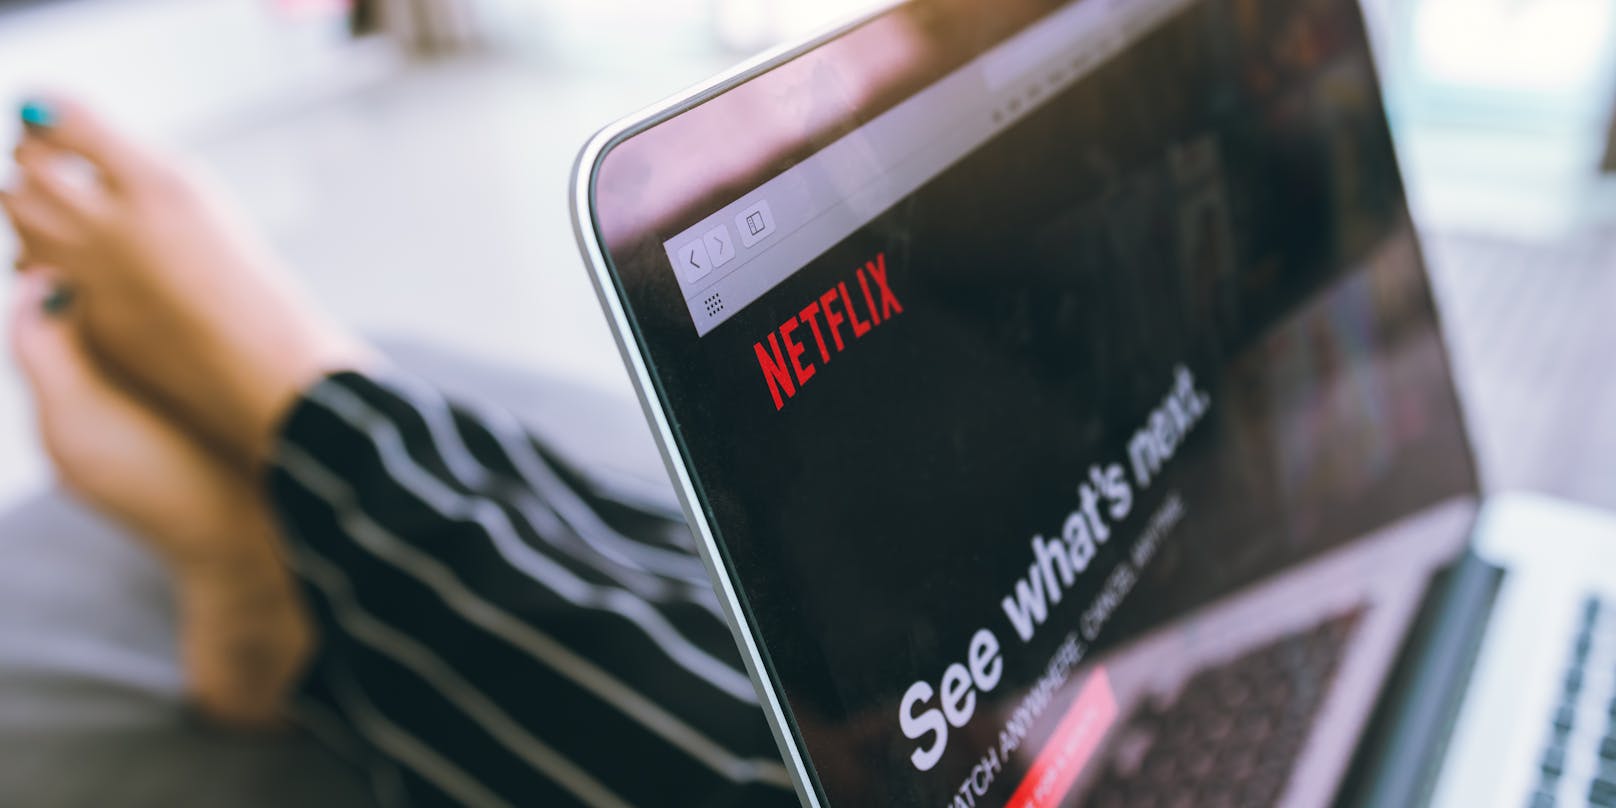 Gerade in der Corona-Krise war der Streaming-Anbieter Netflix äußerst beliebt.&nbsp;<a href="https://www.heute.at/s/netflix-gibt-dir-jetzt-beim-binge-watchen-gas-100095040">Der Streamingdienst hat damit begonnen, seine Plattform mit einer neuen Funktion auszustatten.</a>